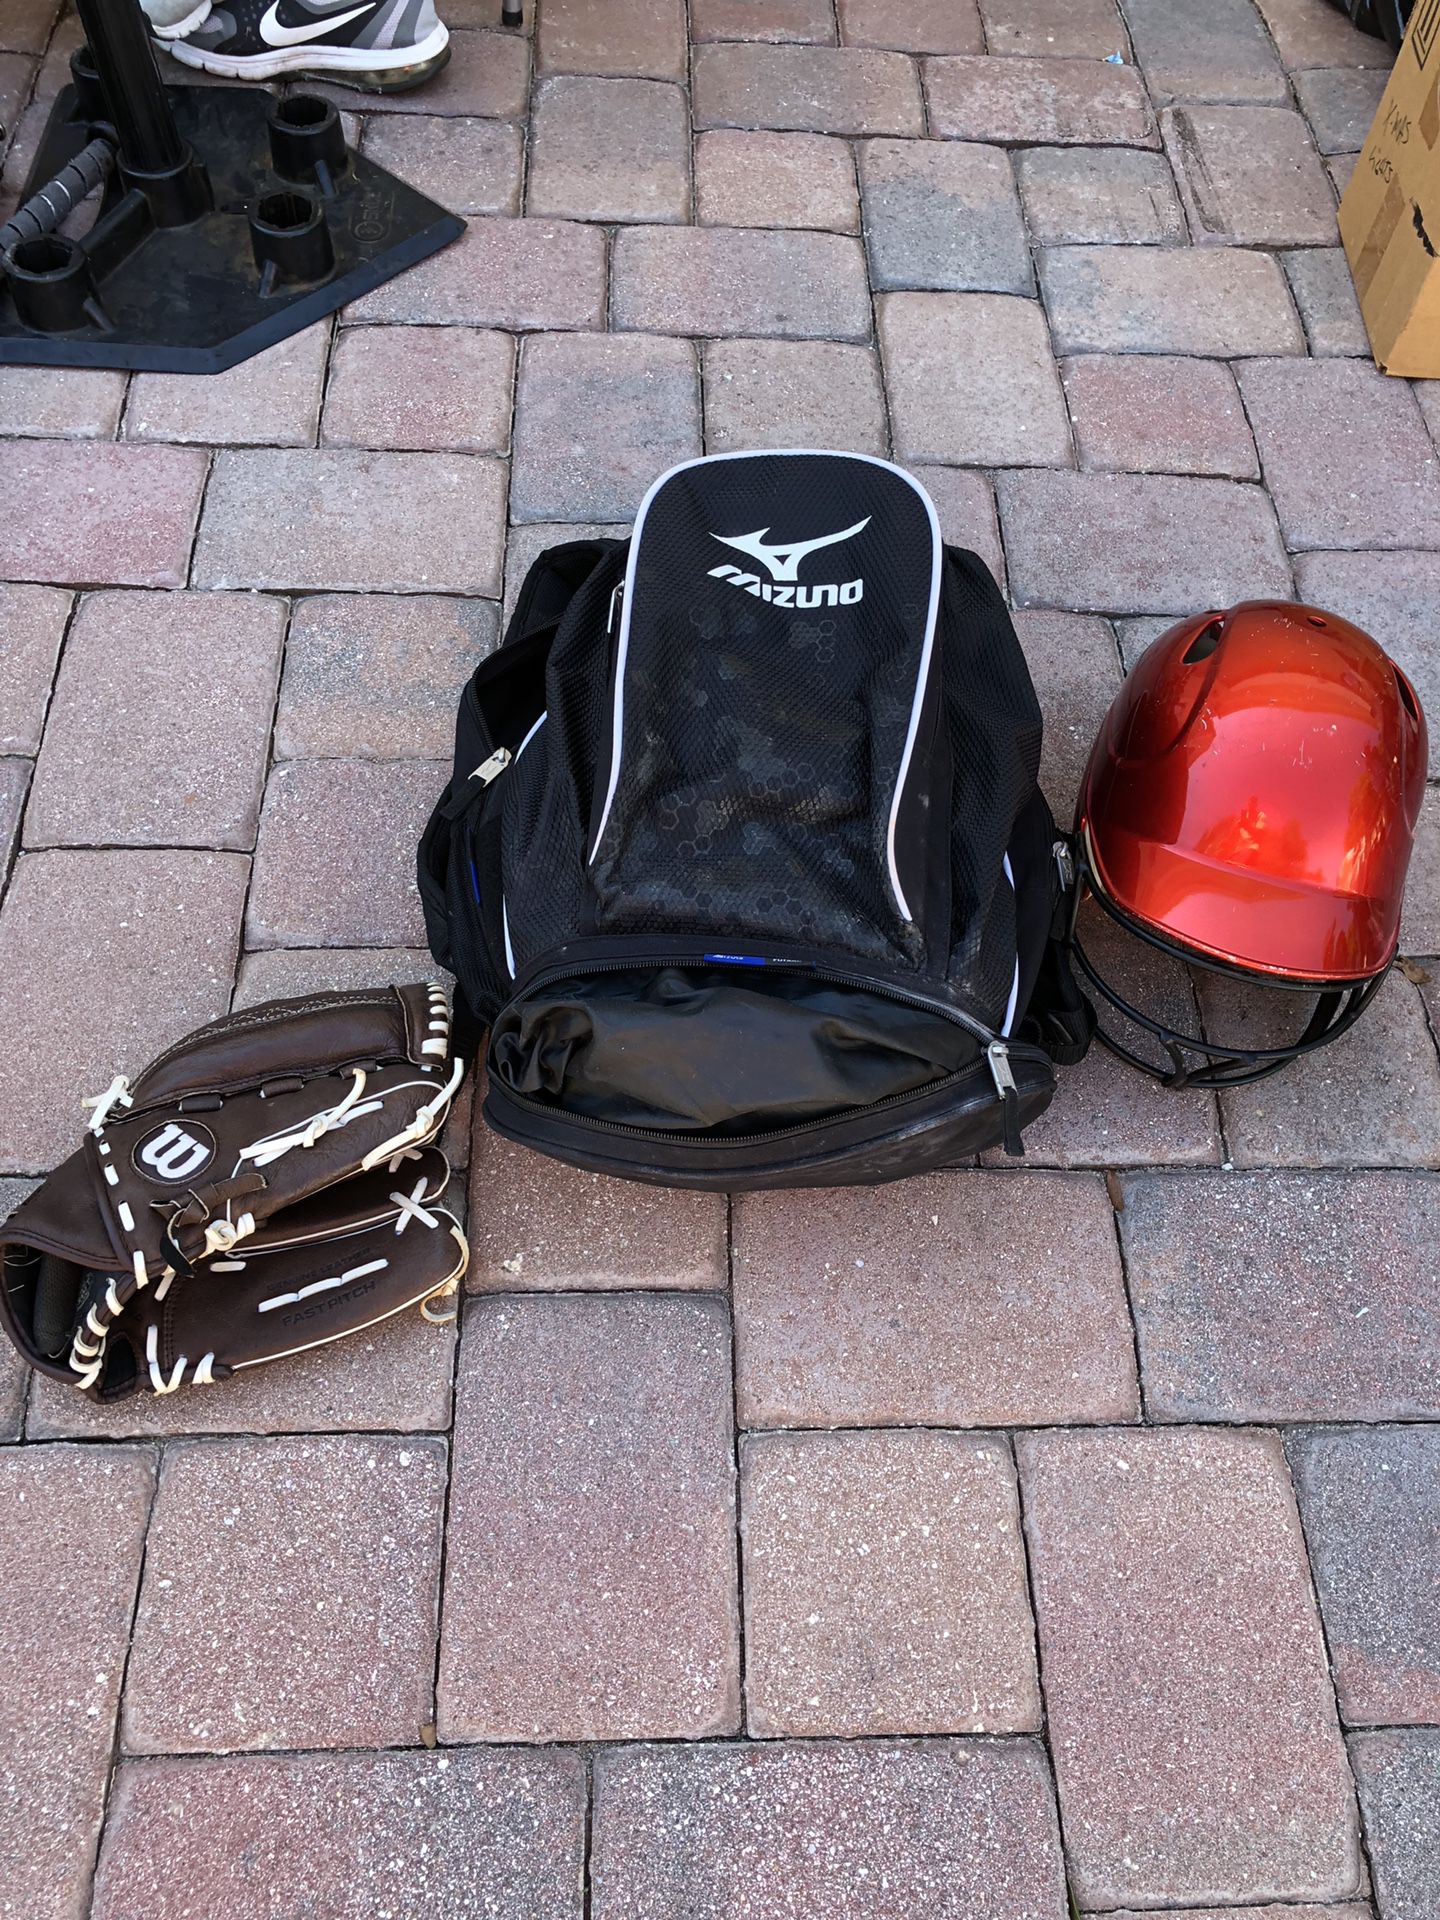 Mizuno Softball bag, helmet and glove